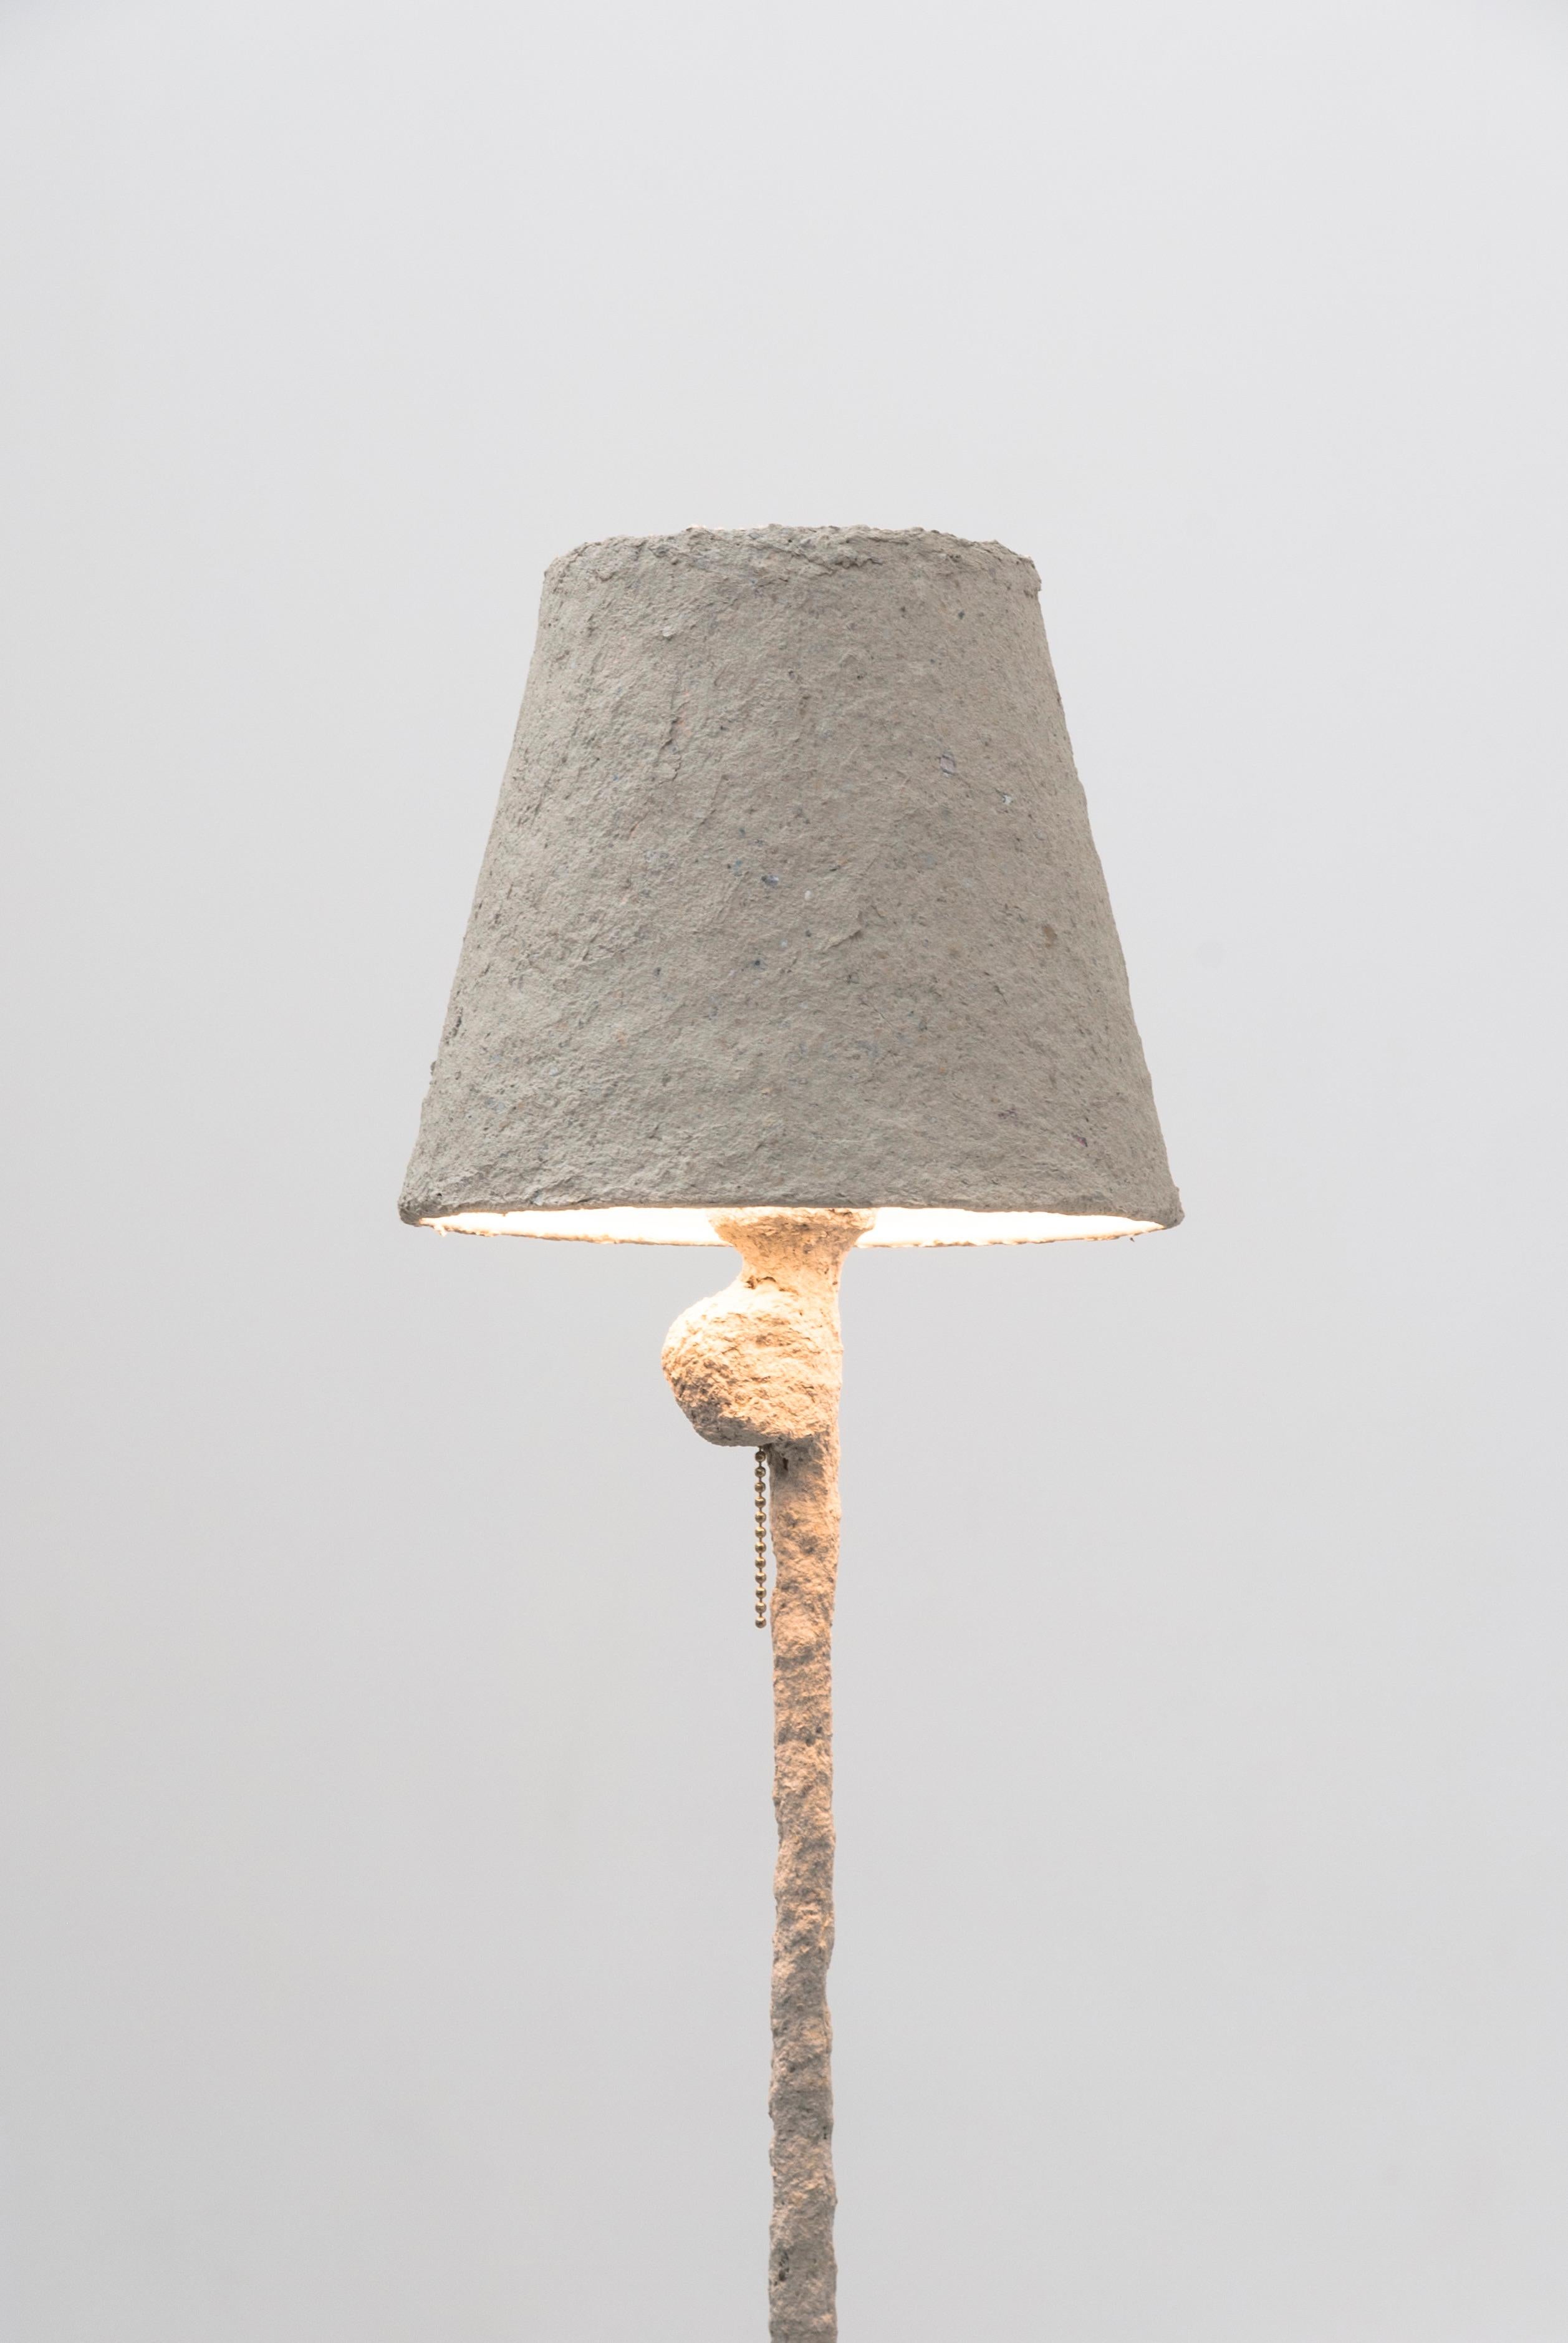 Diese Giacometti-Stehleuchte von Bailey Fontaine ist von den Werken Alberto Giacomettis inspiriert. Die Leuchte ist aus unkonventionellen Materialien wie Papierton und Silikon geformt, die eine reiche Textur auf einer biomorphen Oberfläche